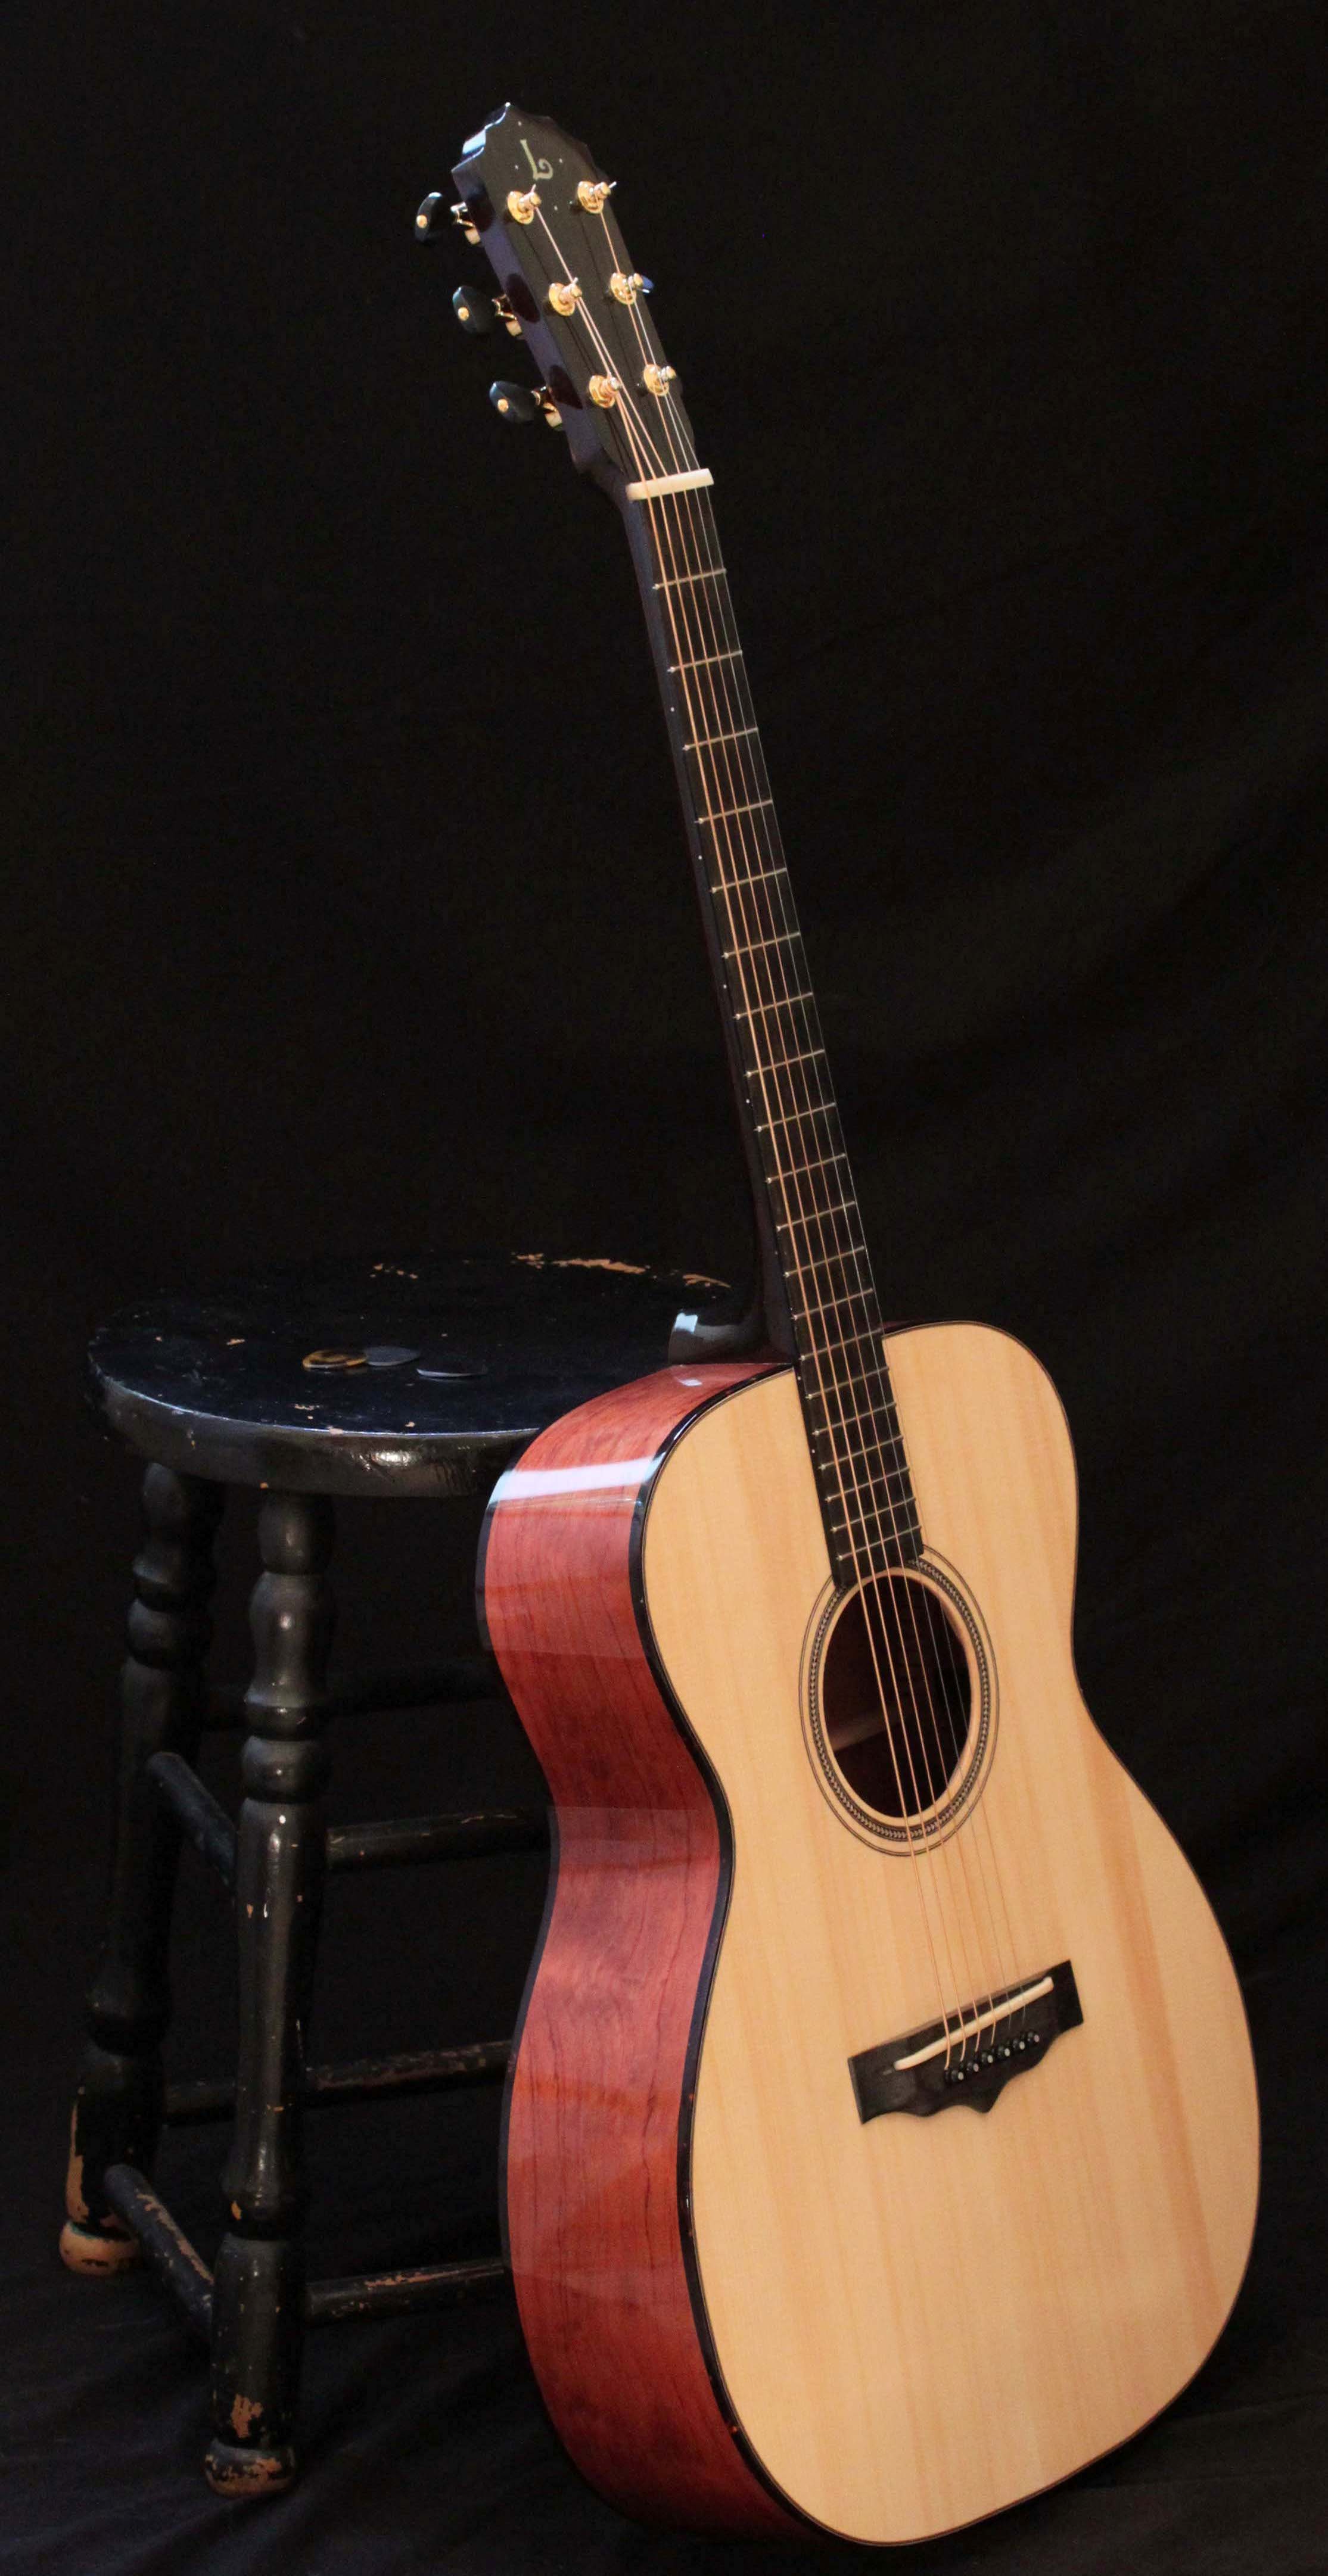 Handmade Bubinga Guitar - win this guitar at www.lichtyguitars.com